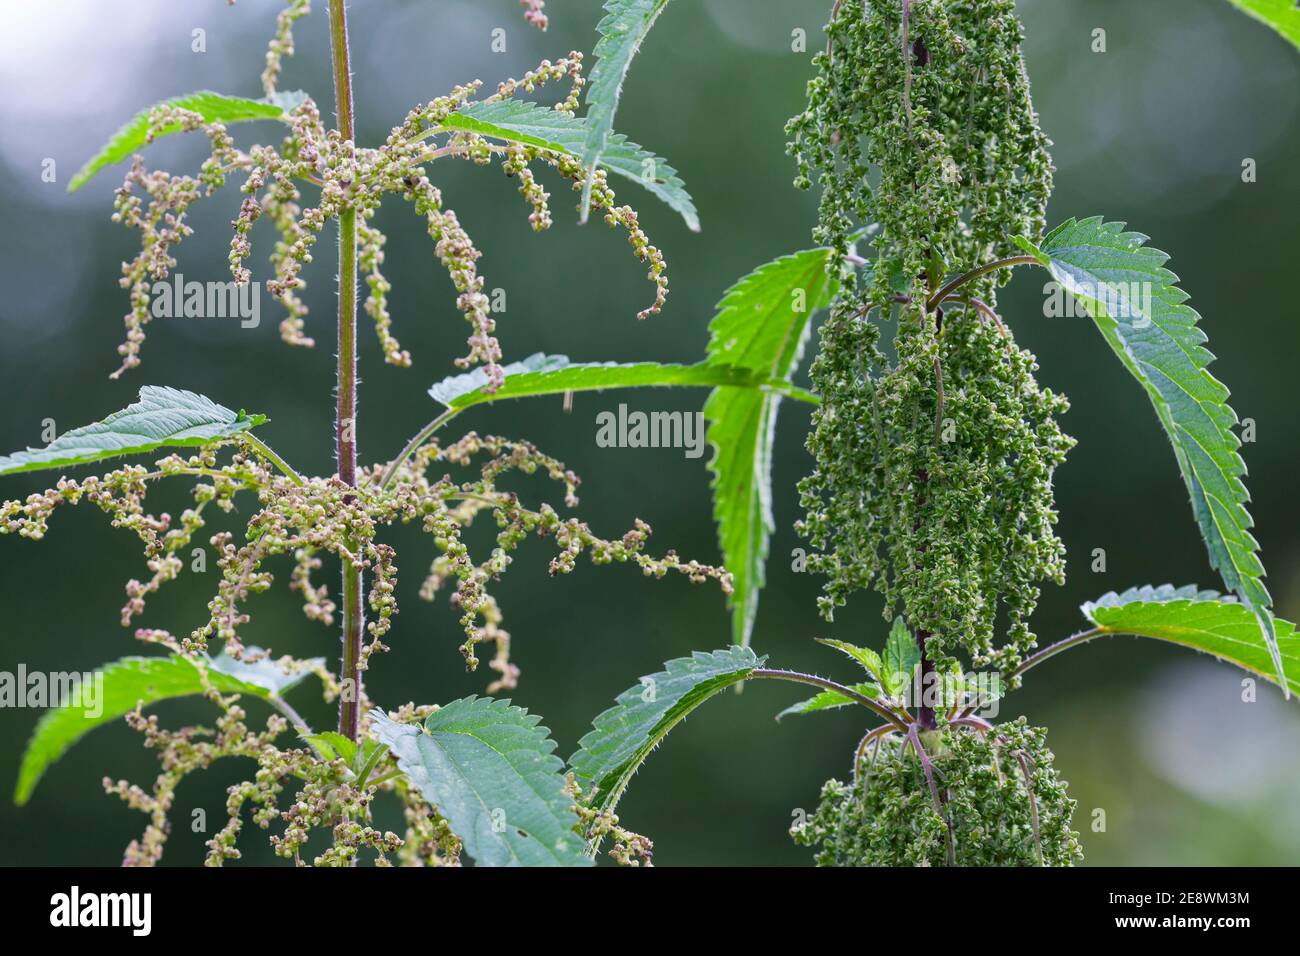 Brennessel, Vergleich Männchen (Liens), Männliche Pflanze und weibliche  Pflanze im Vergleich, Brennnesseln, Große Brennessel Photo Stock - Alamy